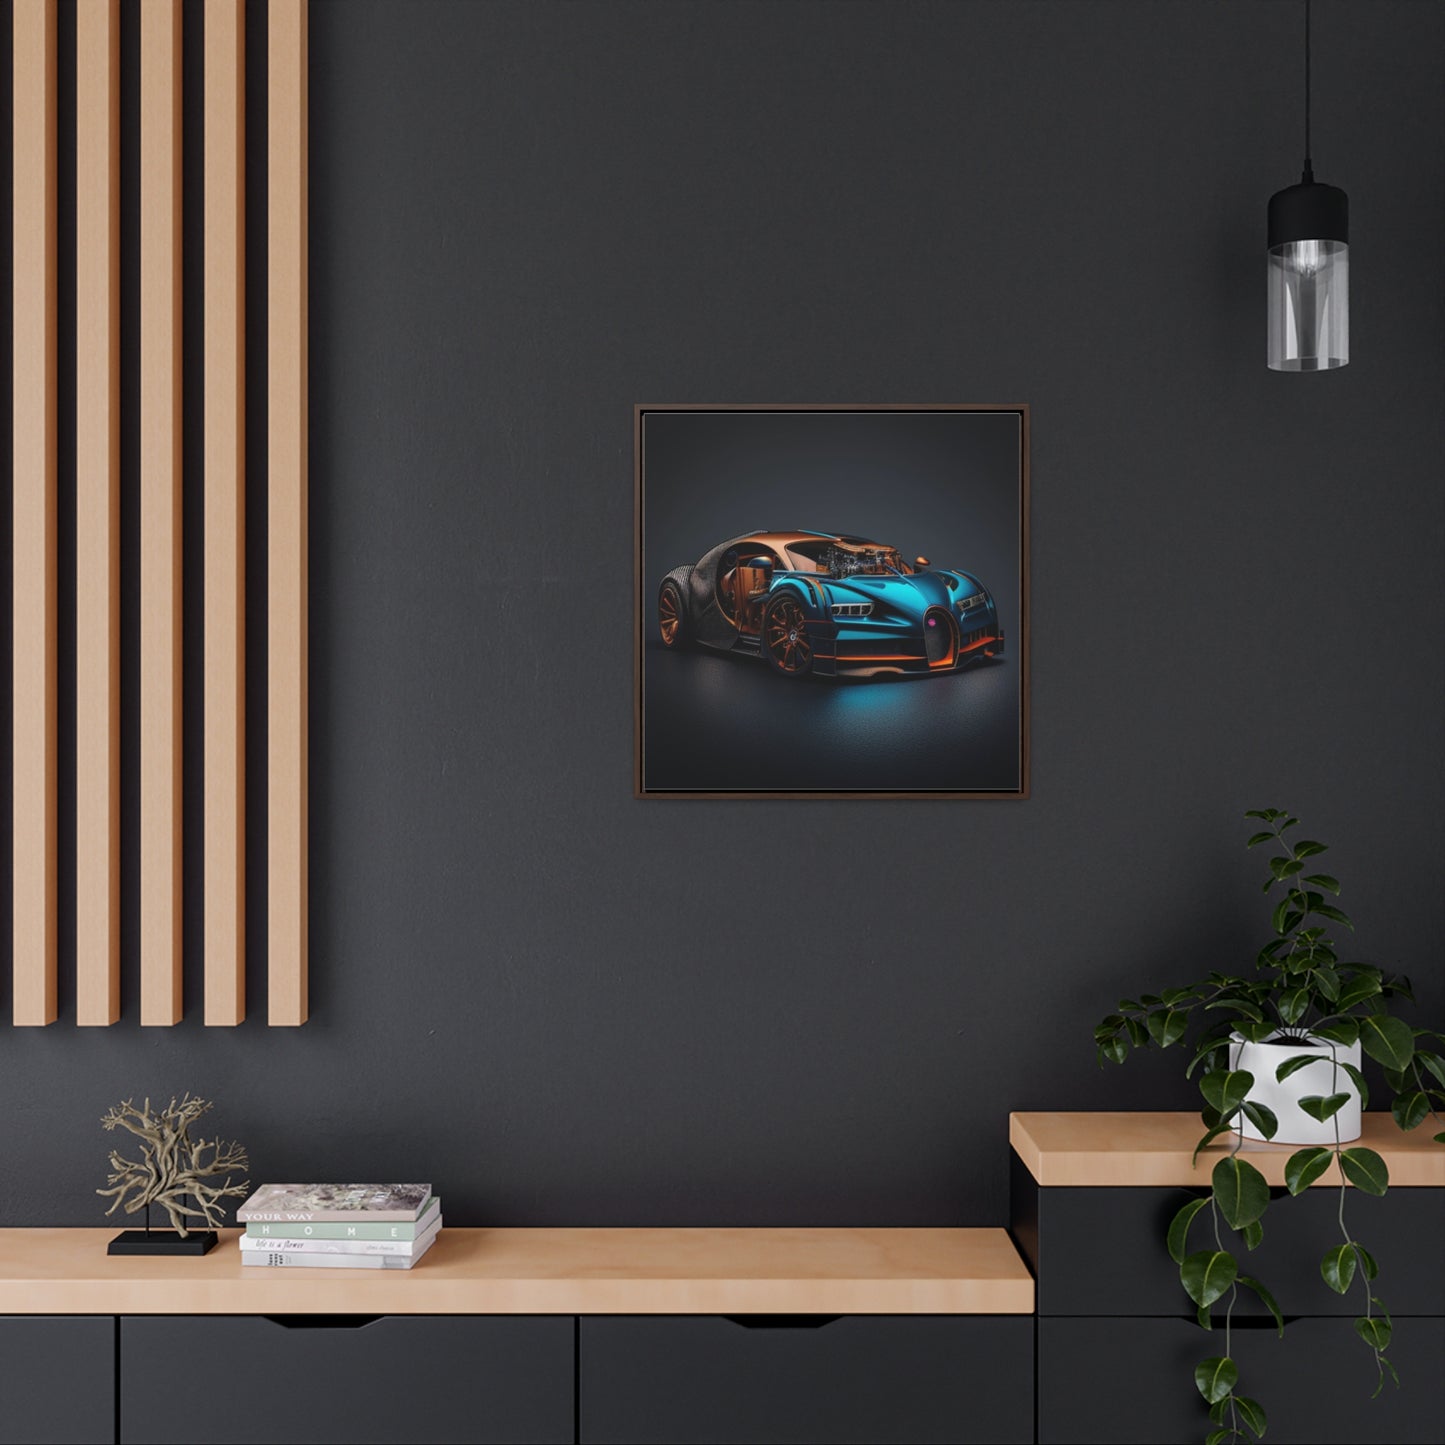 Gallery Canvas Wraps, Square Frame Bugatti Blue 4